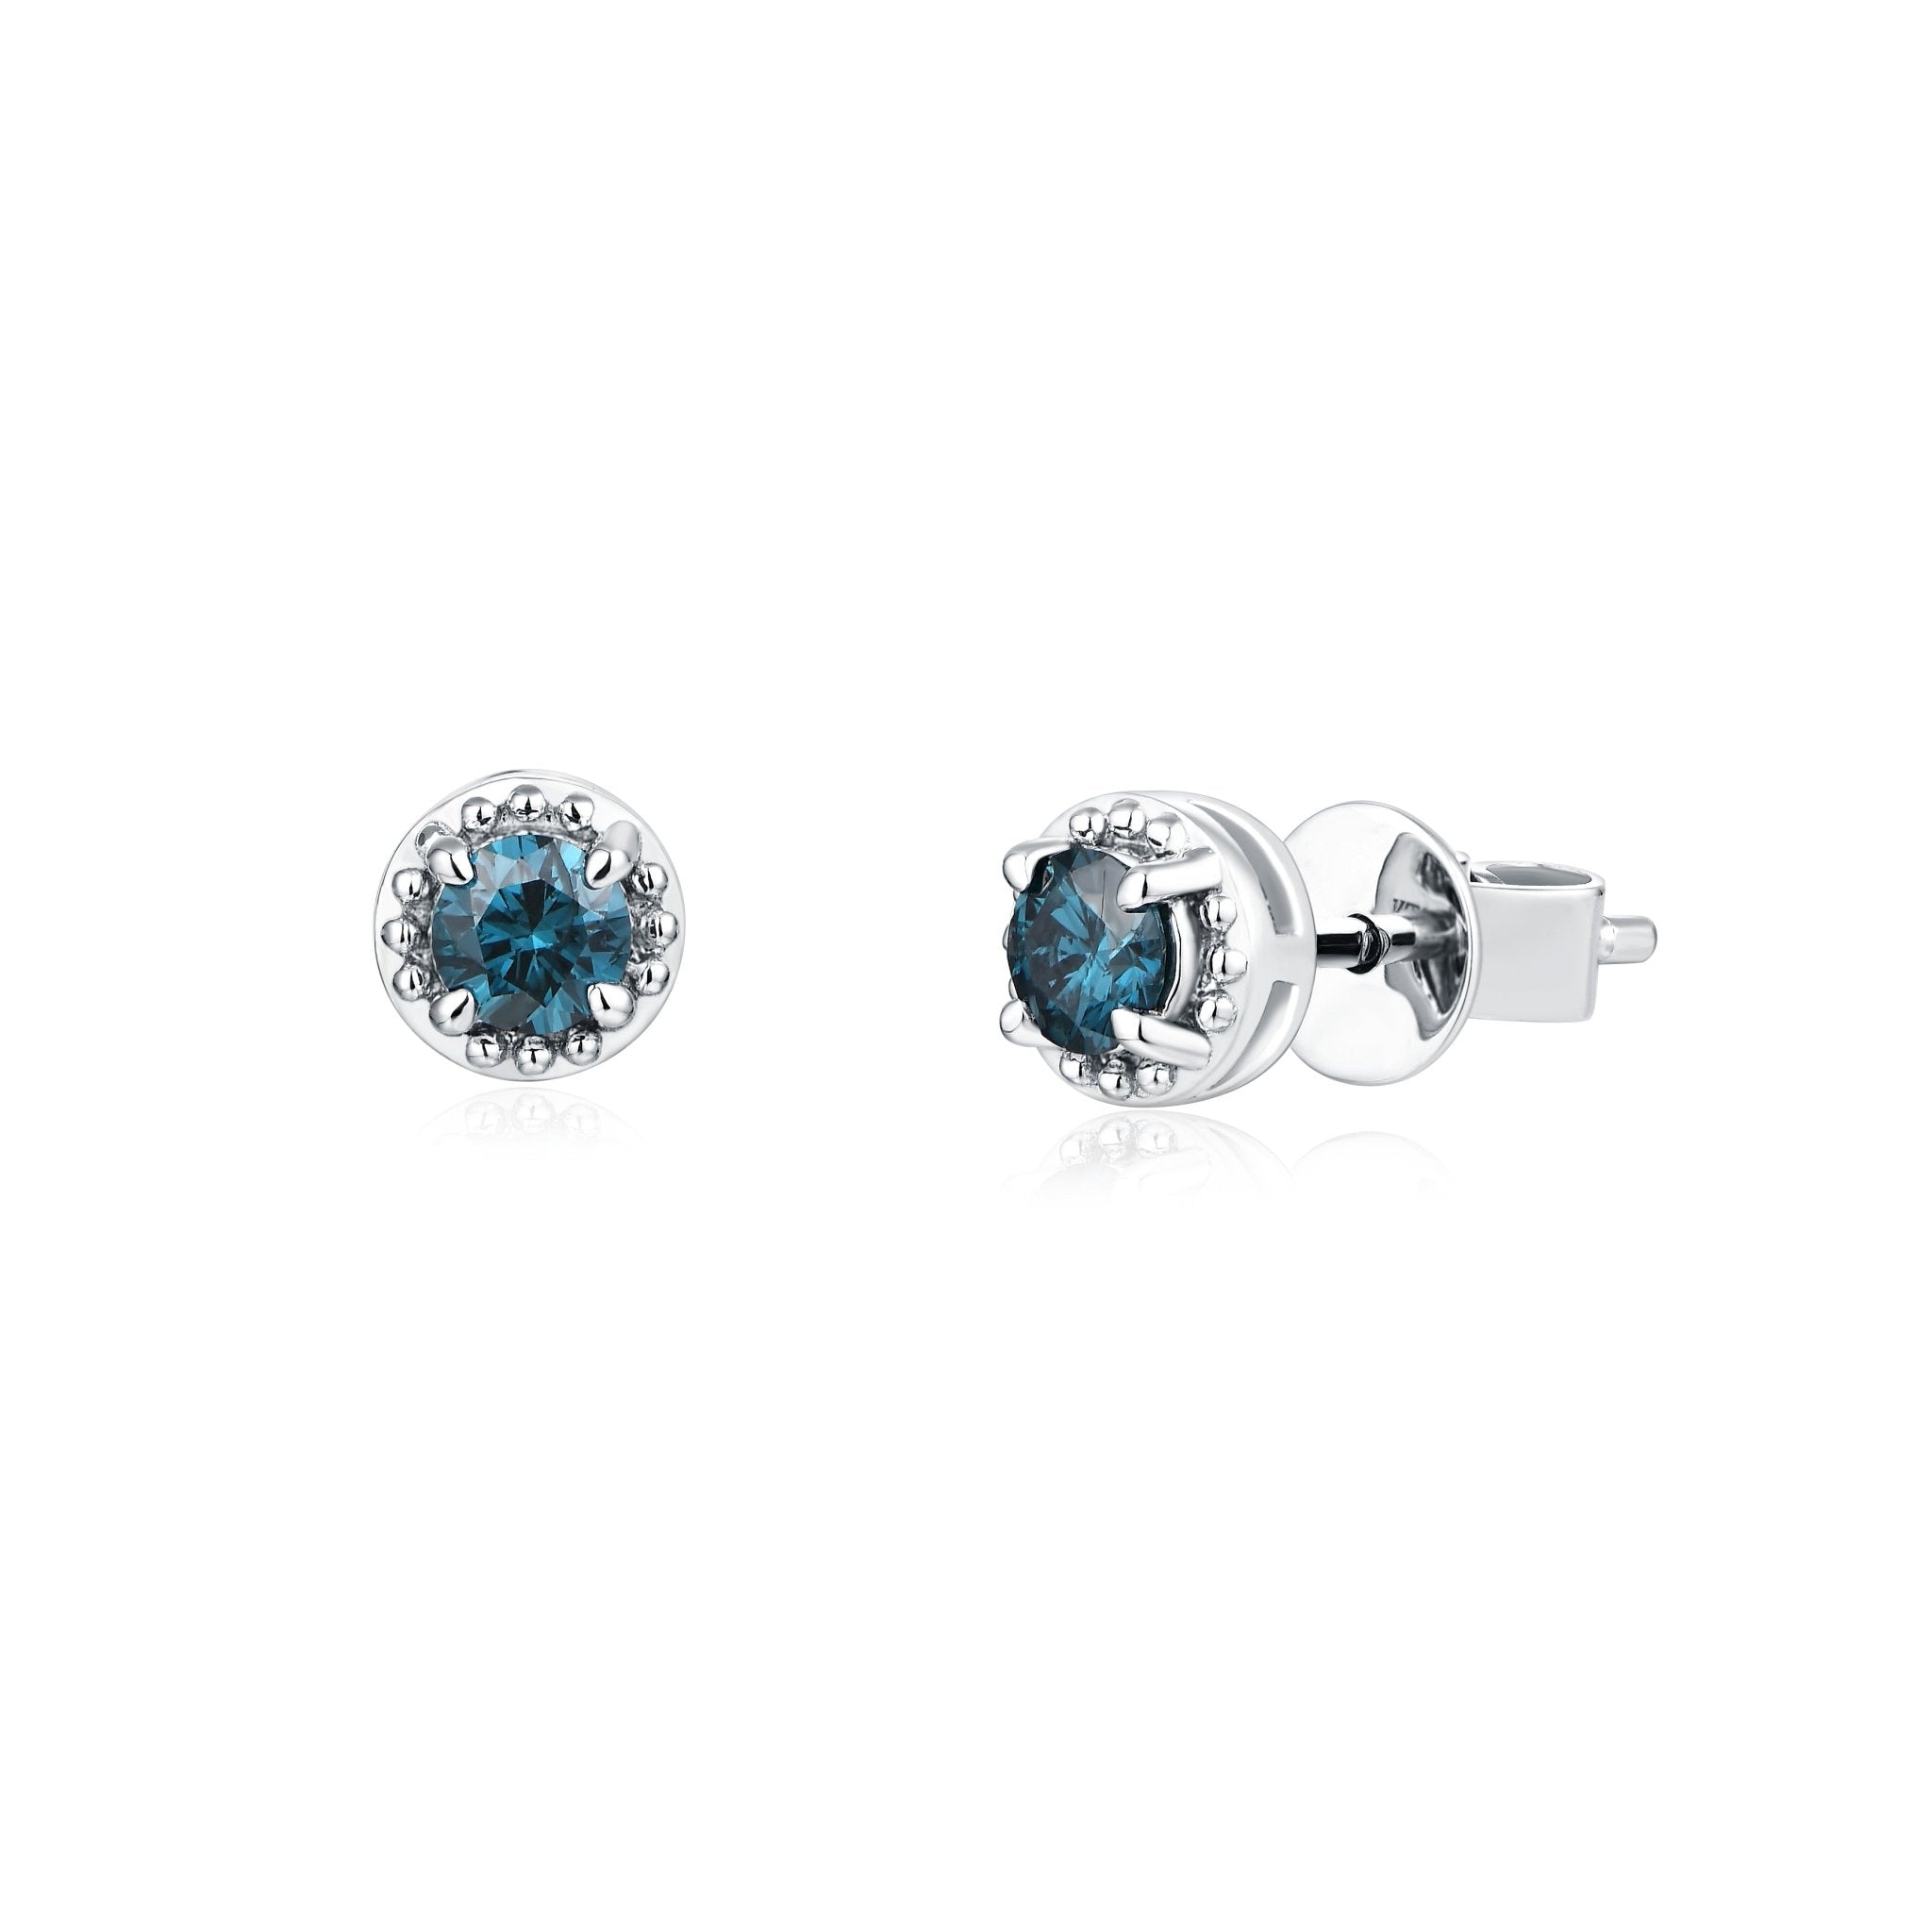 IDE BOTTEGA - Ohrring Illusion Blaue Diamant | IDE BOTTEGA